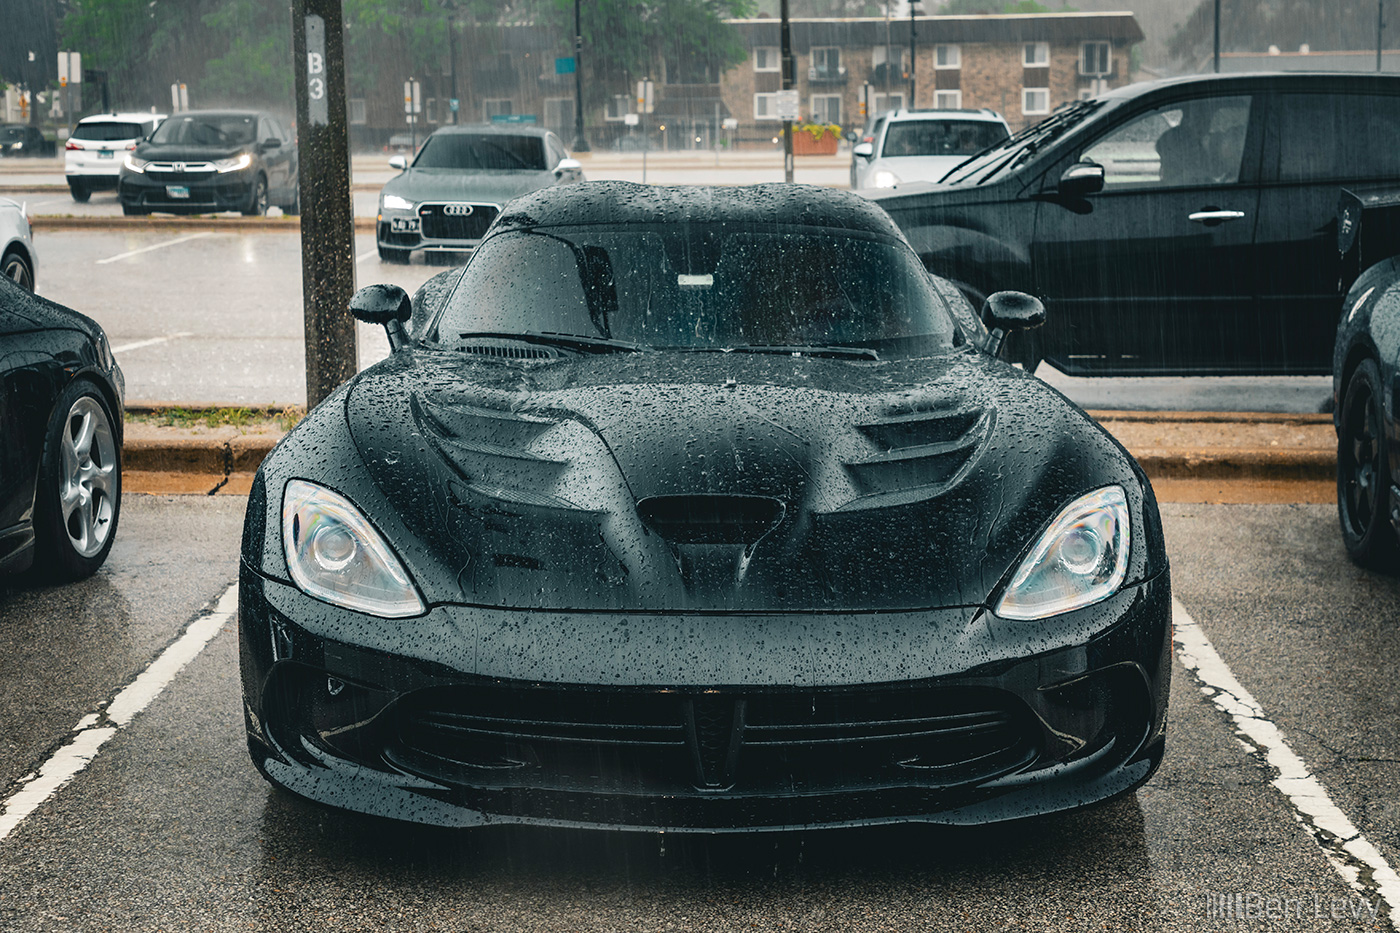 Front of Black Dodge Viper in the Rain